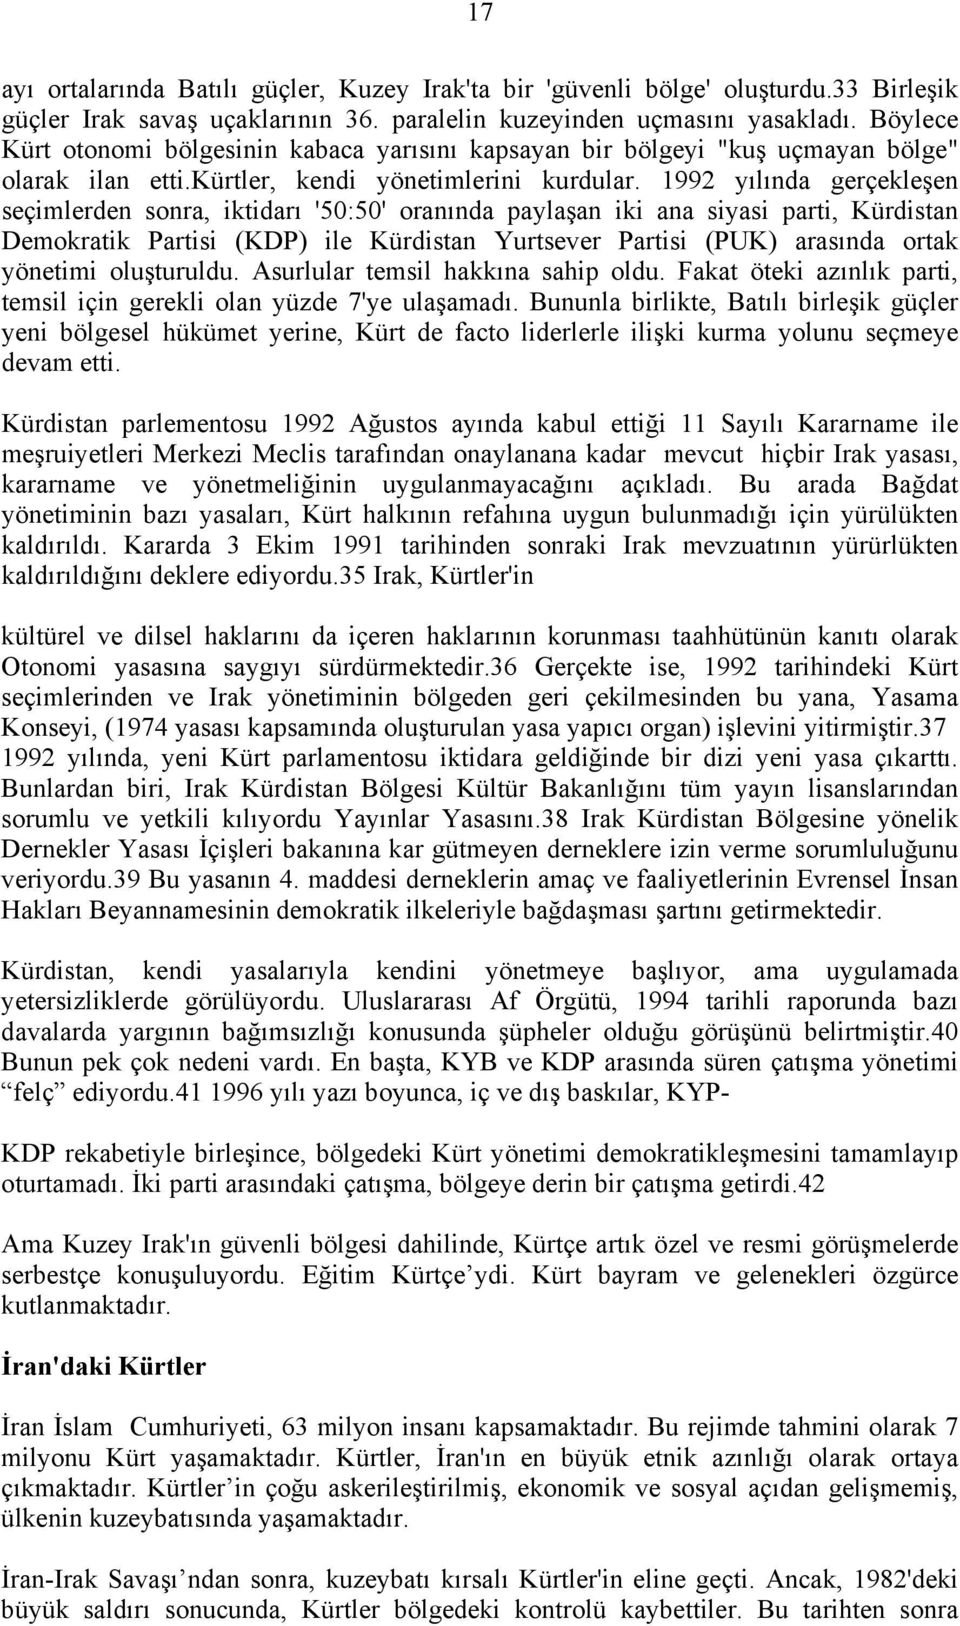 1992 yõlõnda gerçekleşen seçimlerden sonra, iktidarõ '50:50' oranõnda paylaşan iki ana siyasi parti, Kürdistan Demokratik Partisi (KDP) ile Kürdistan Yurtsever Partisi (PUK) arasõnda ortak yönetimi